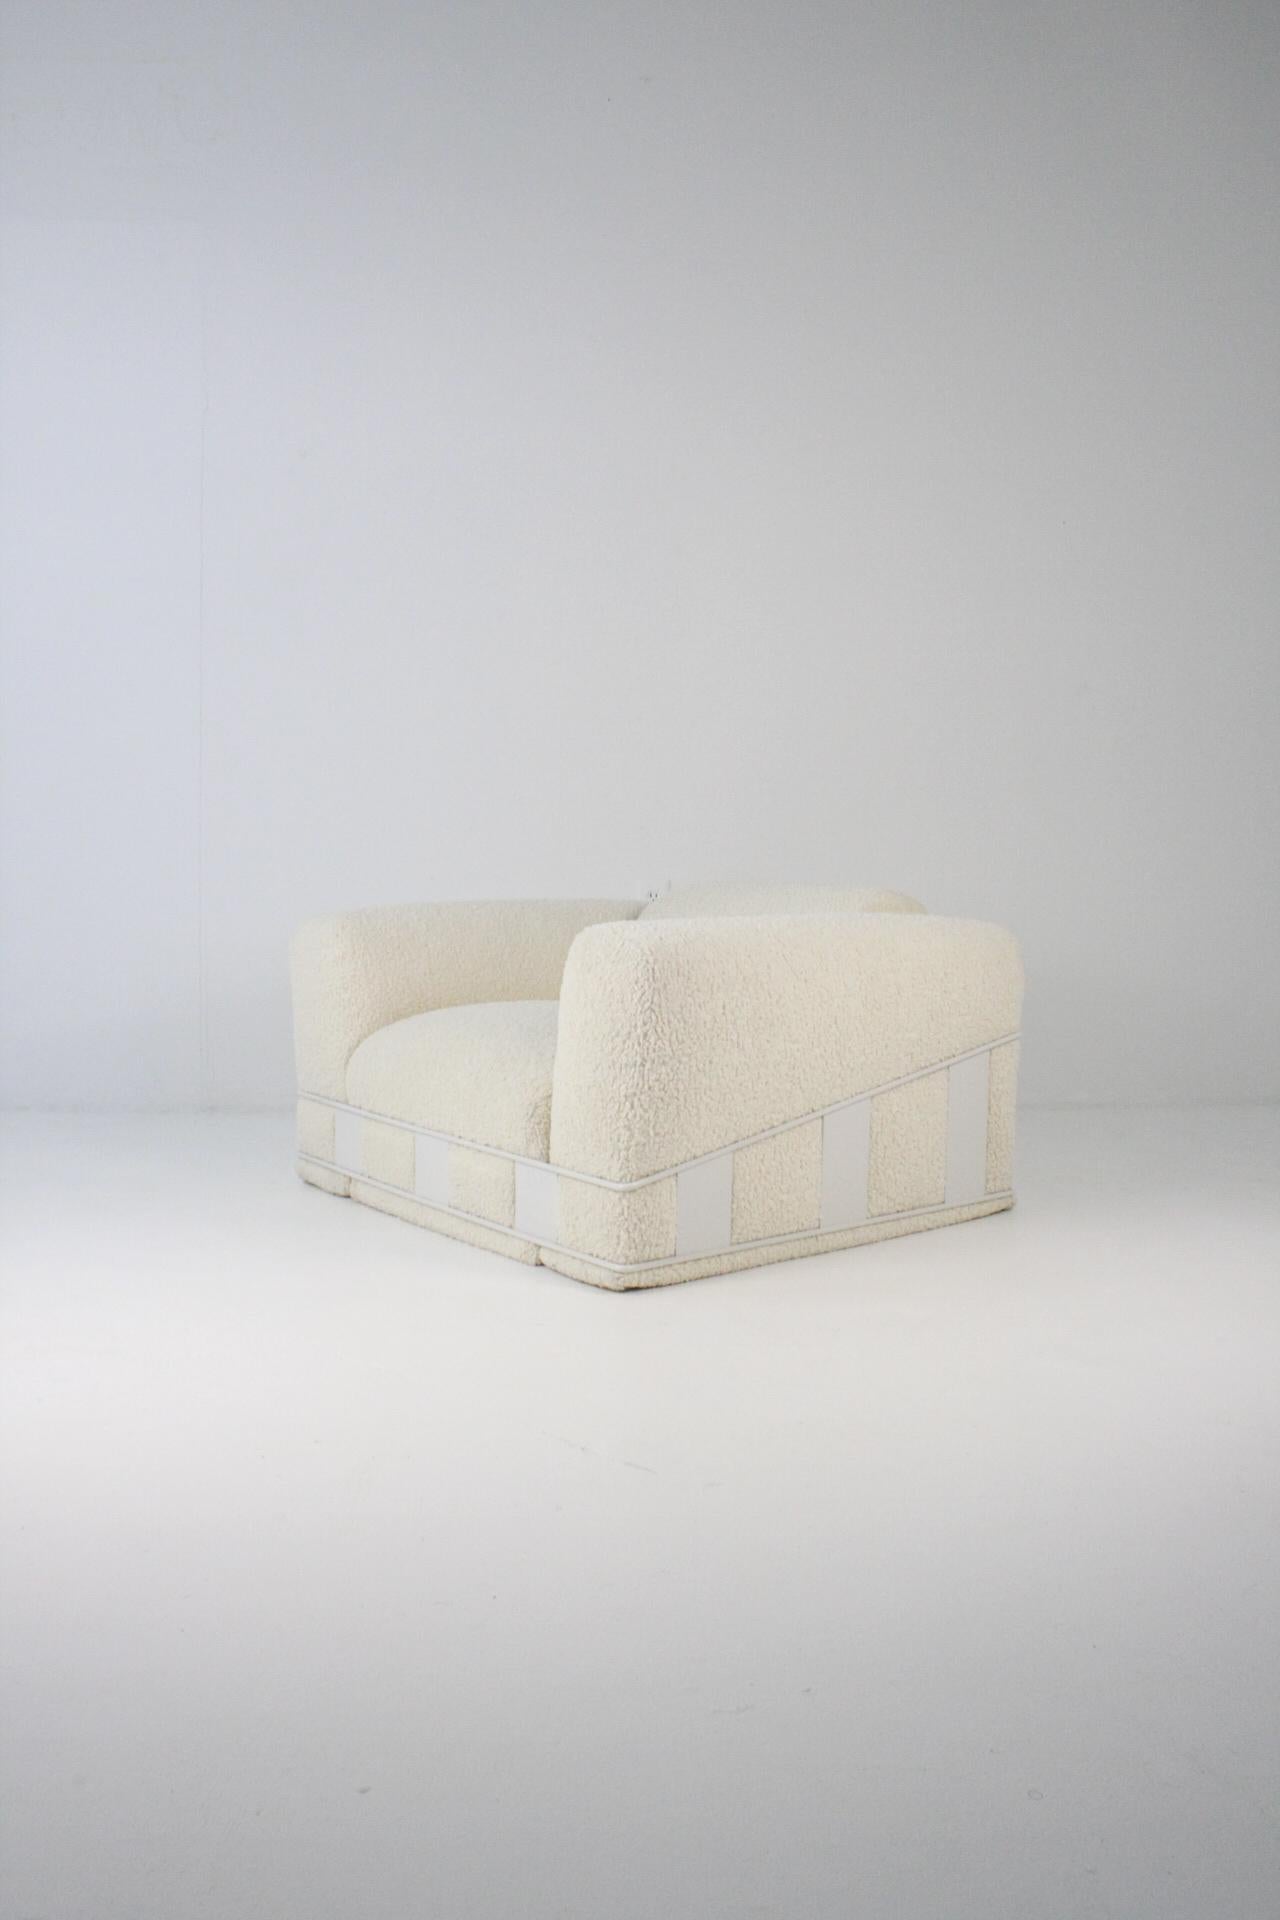 Chaise longue en cage de Great Craft and Associates, conçue par Adrian Pearsall. La chaise date du début des années 1970. Cette chaise est dotée d'un bouclé sur mesure et d'un cadre enduit de poudre blanc cassé sur mesure. Une pièce unique.
Chaise